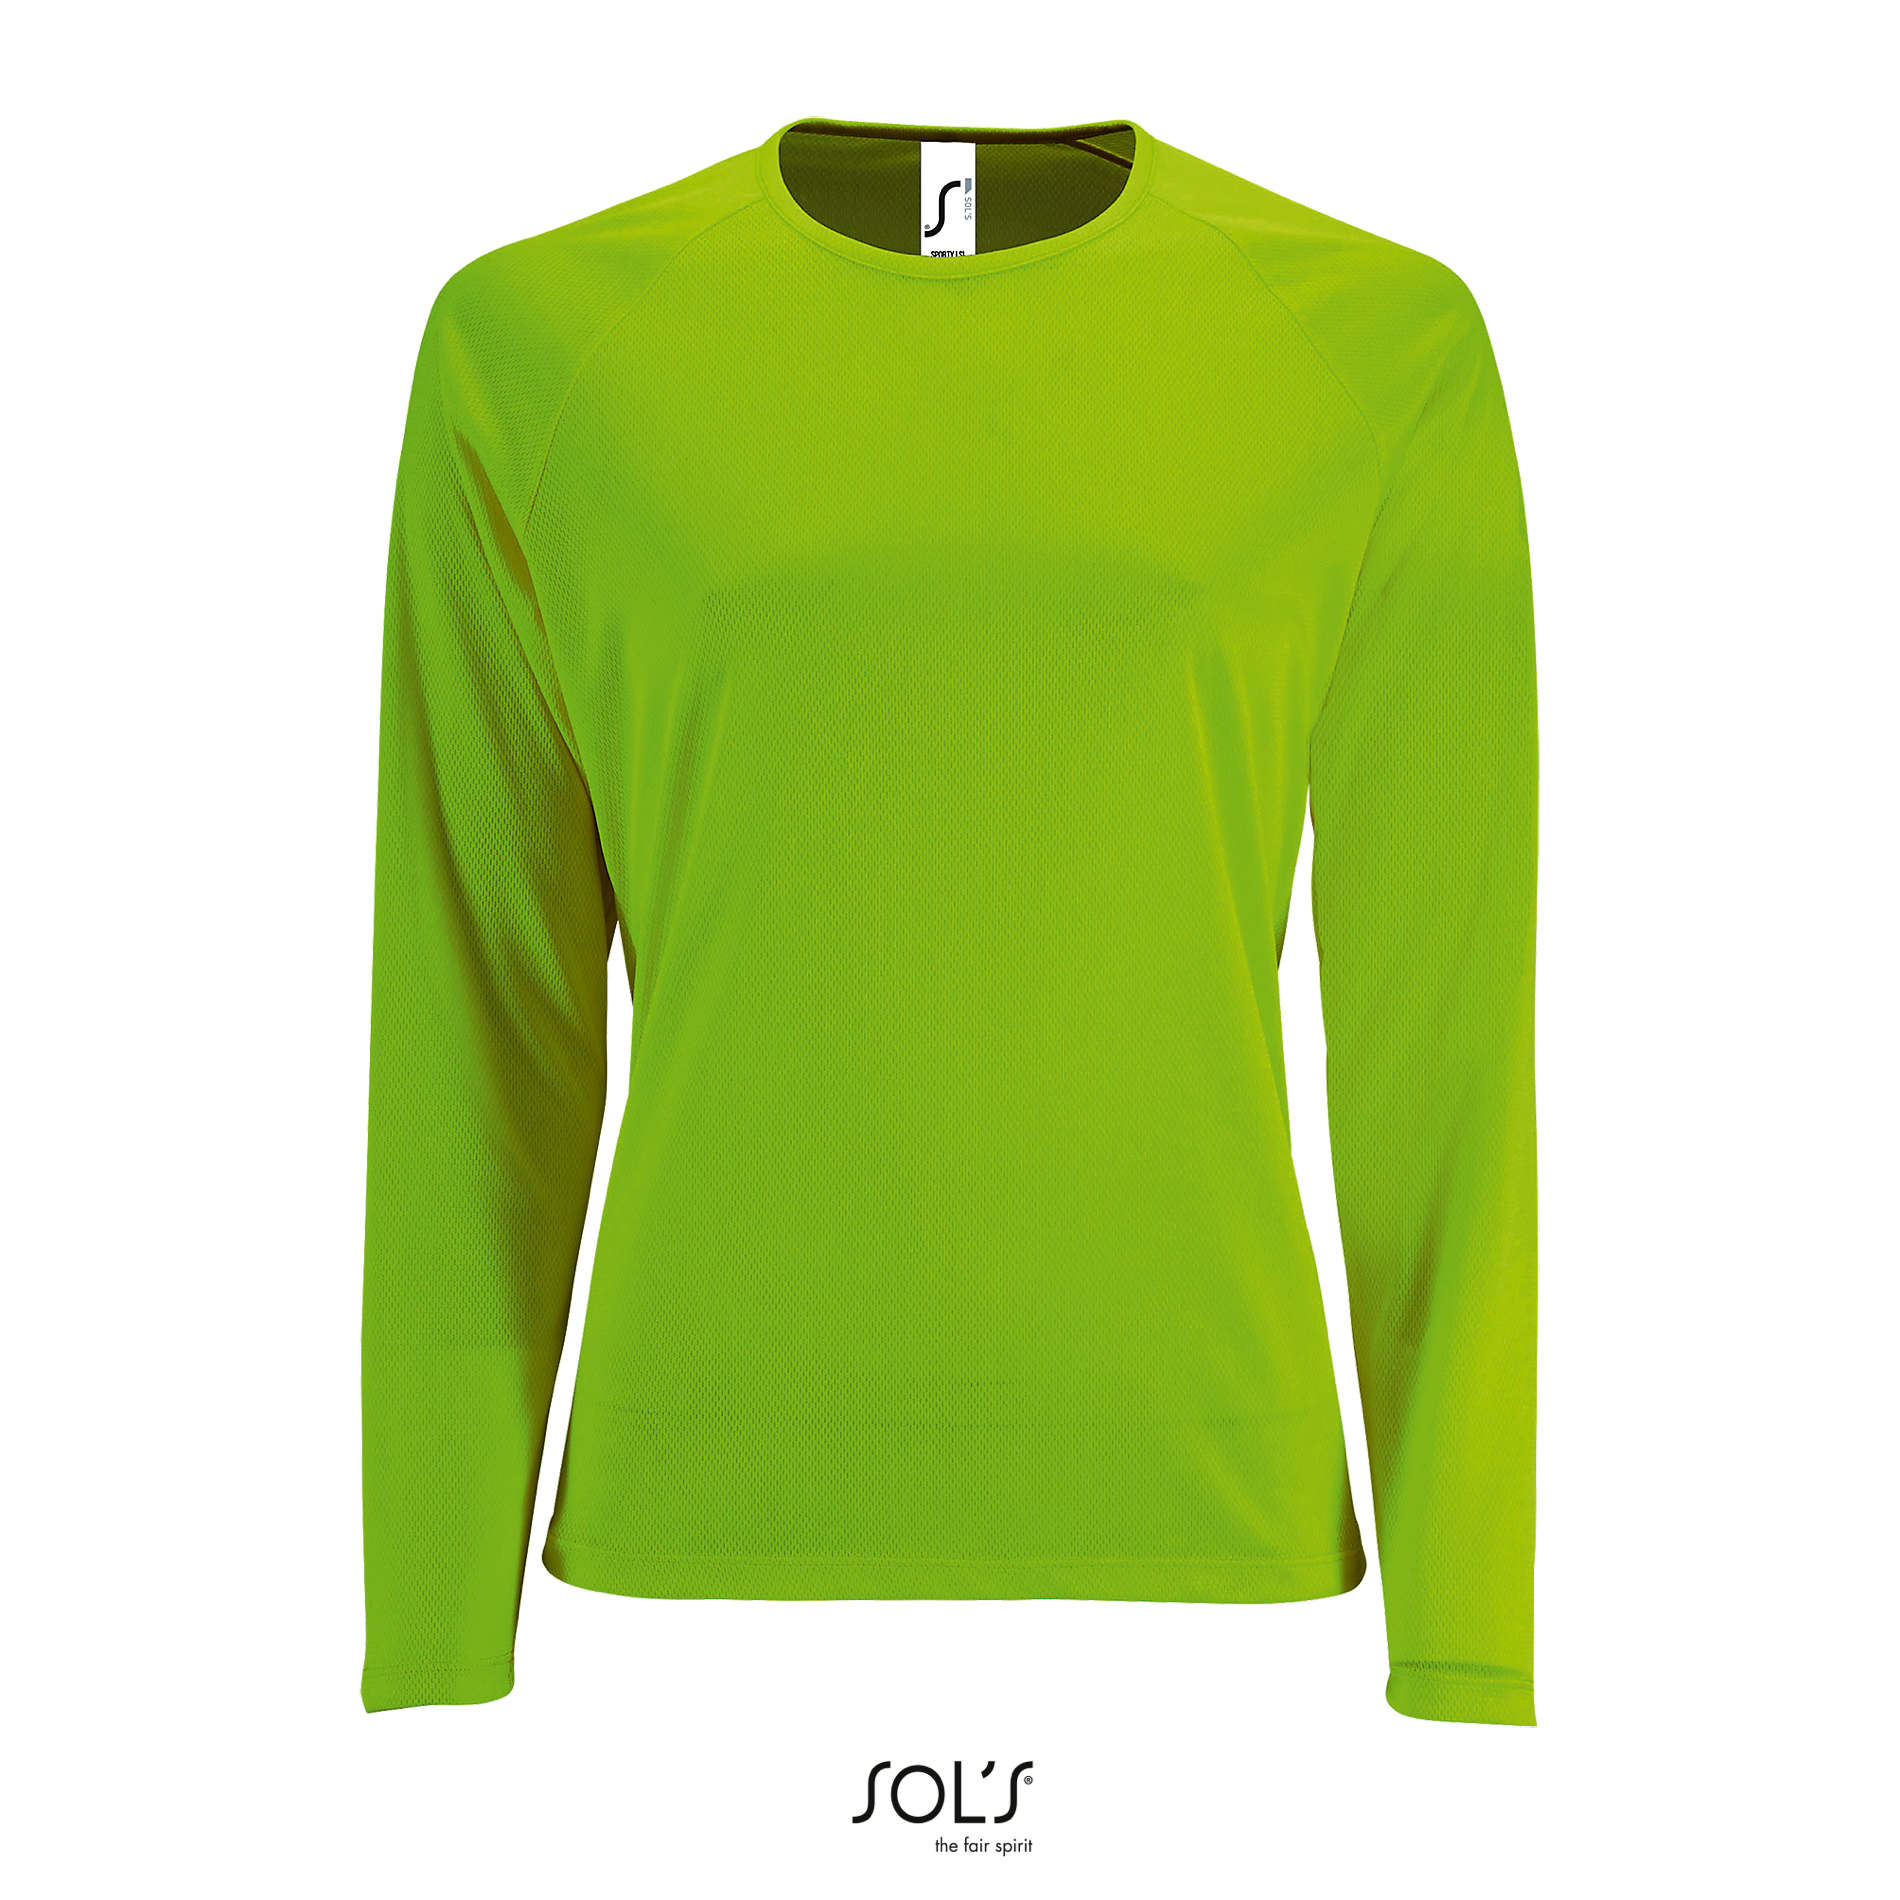 sporty-lsl-women-verde-fluo.webp